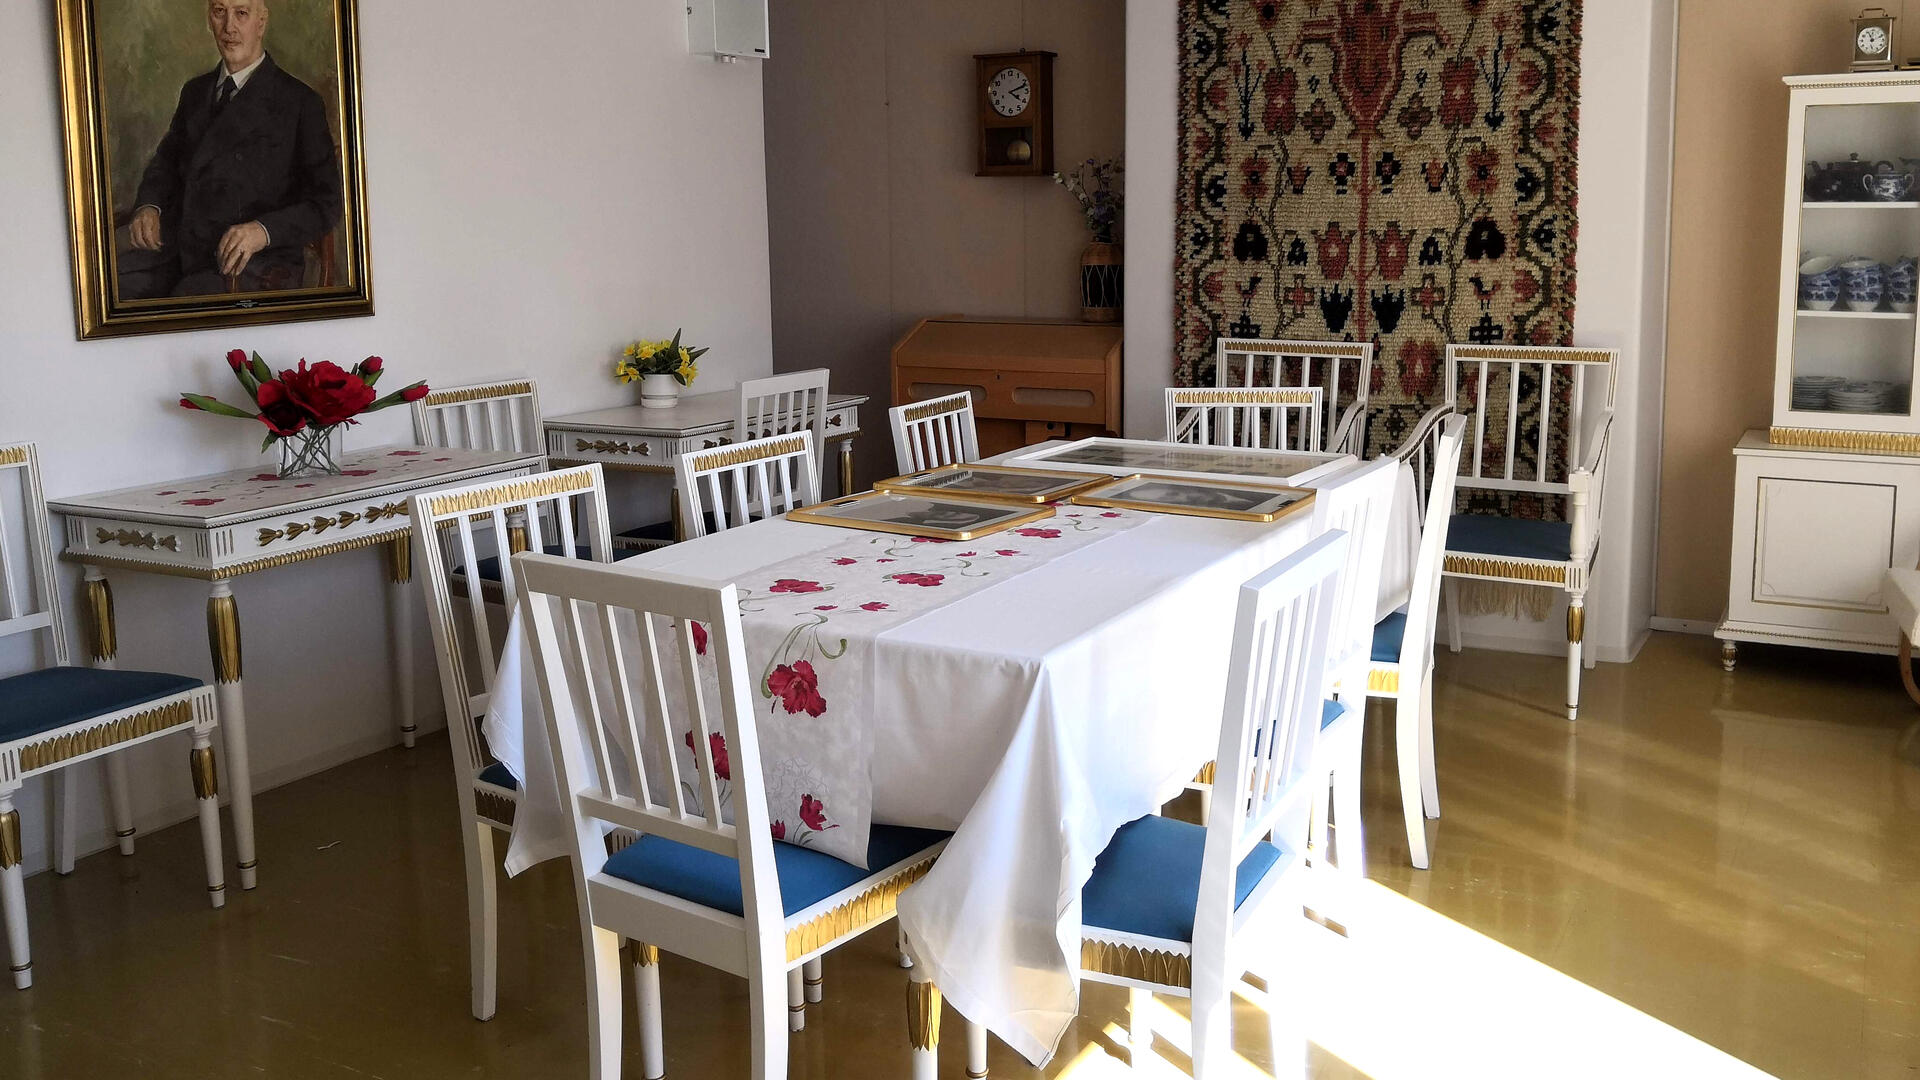 huoneessa valkoinen ruokapöytä tuoleineen, taustalla apupöydät, seinällä kehystetty maalaus ja ryijy